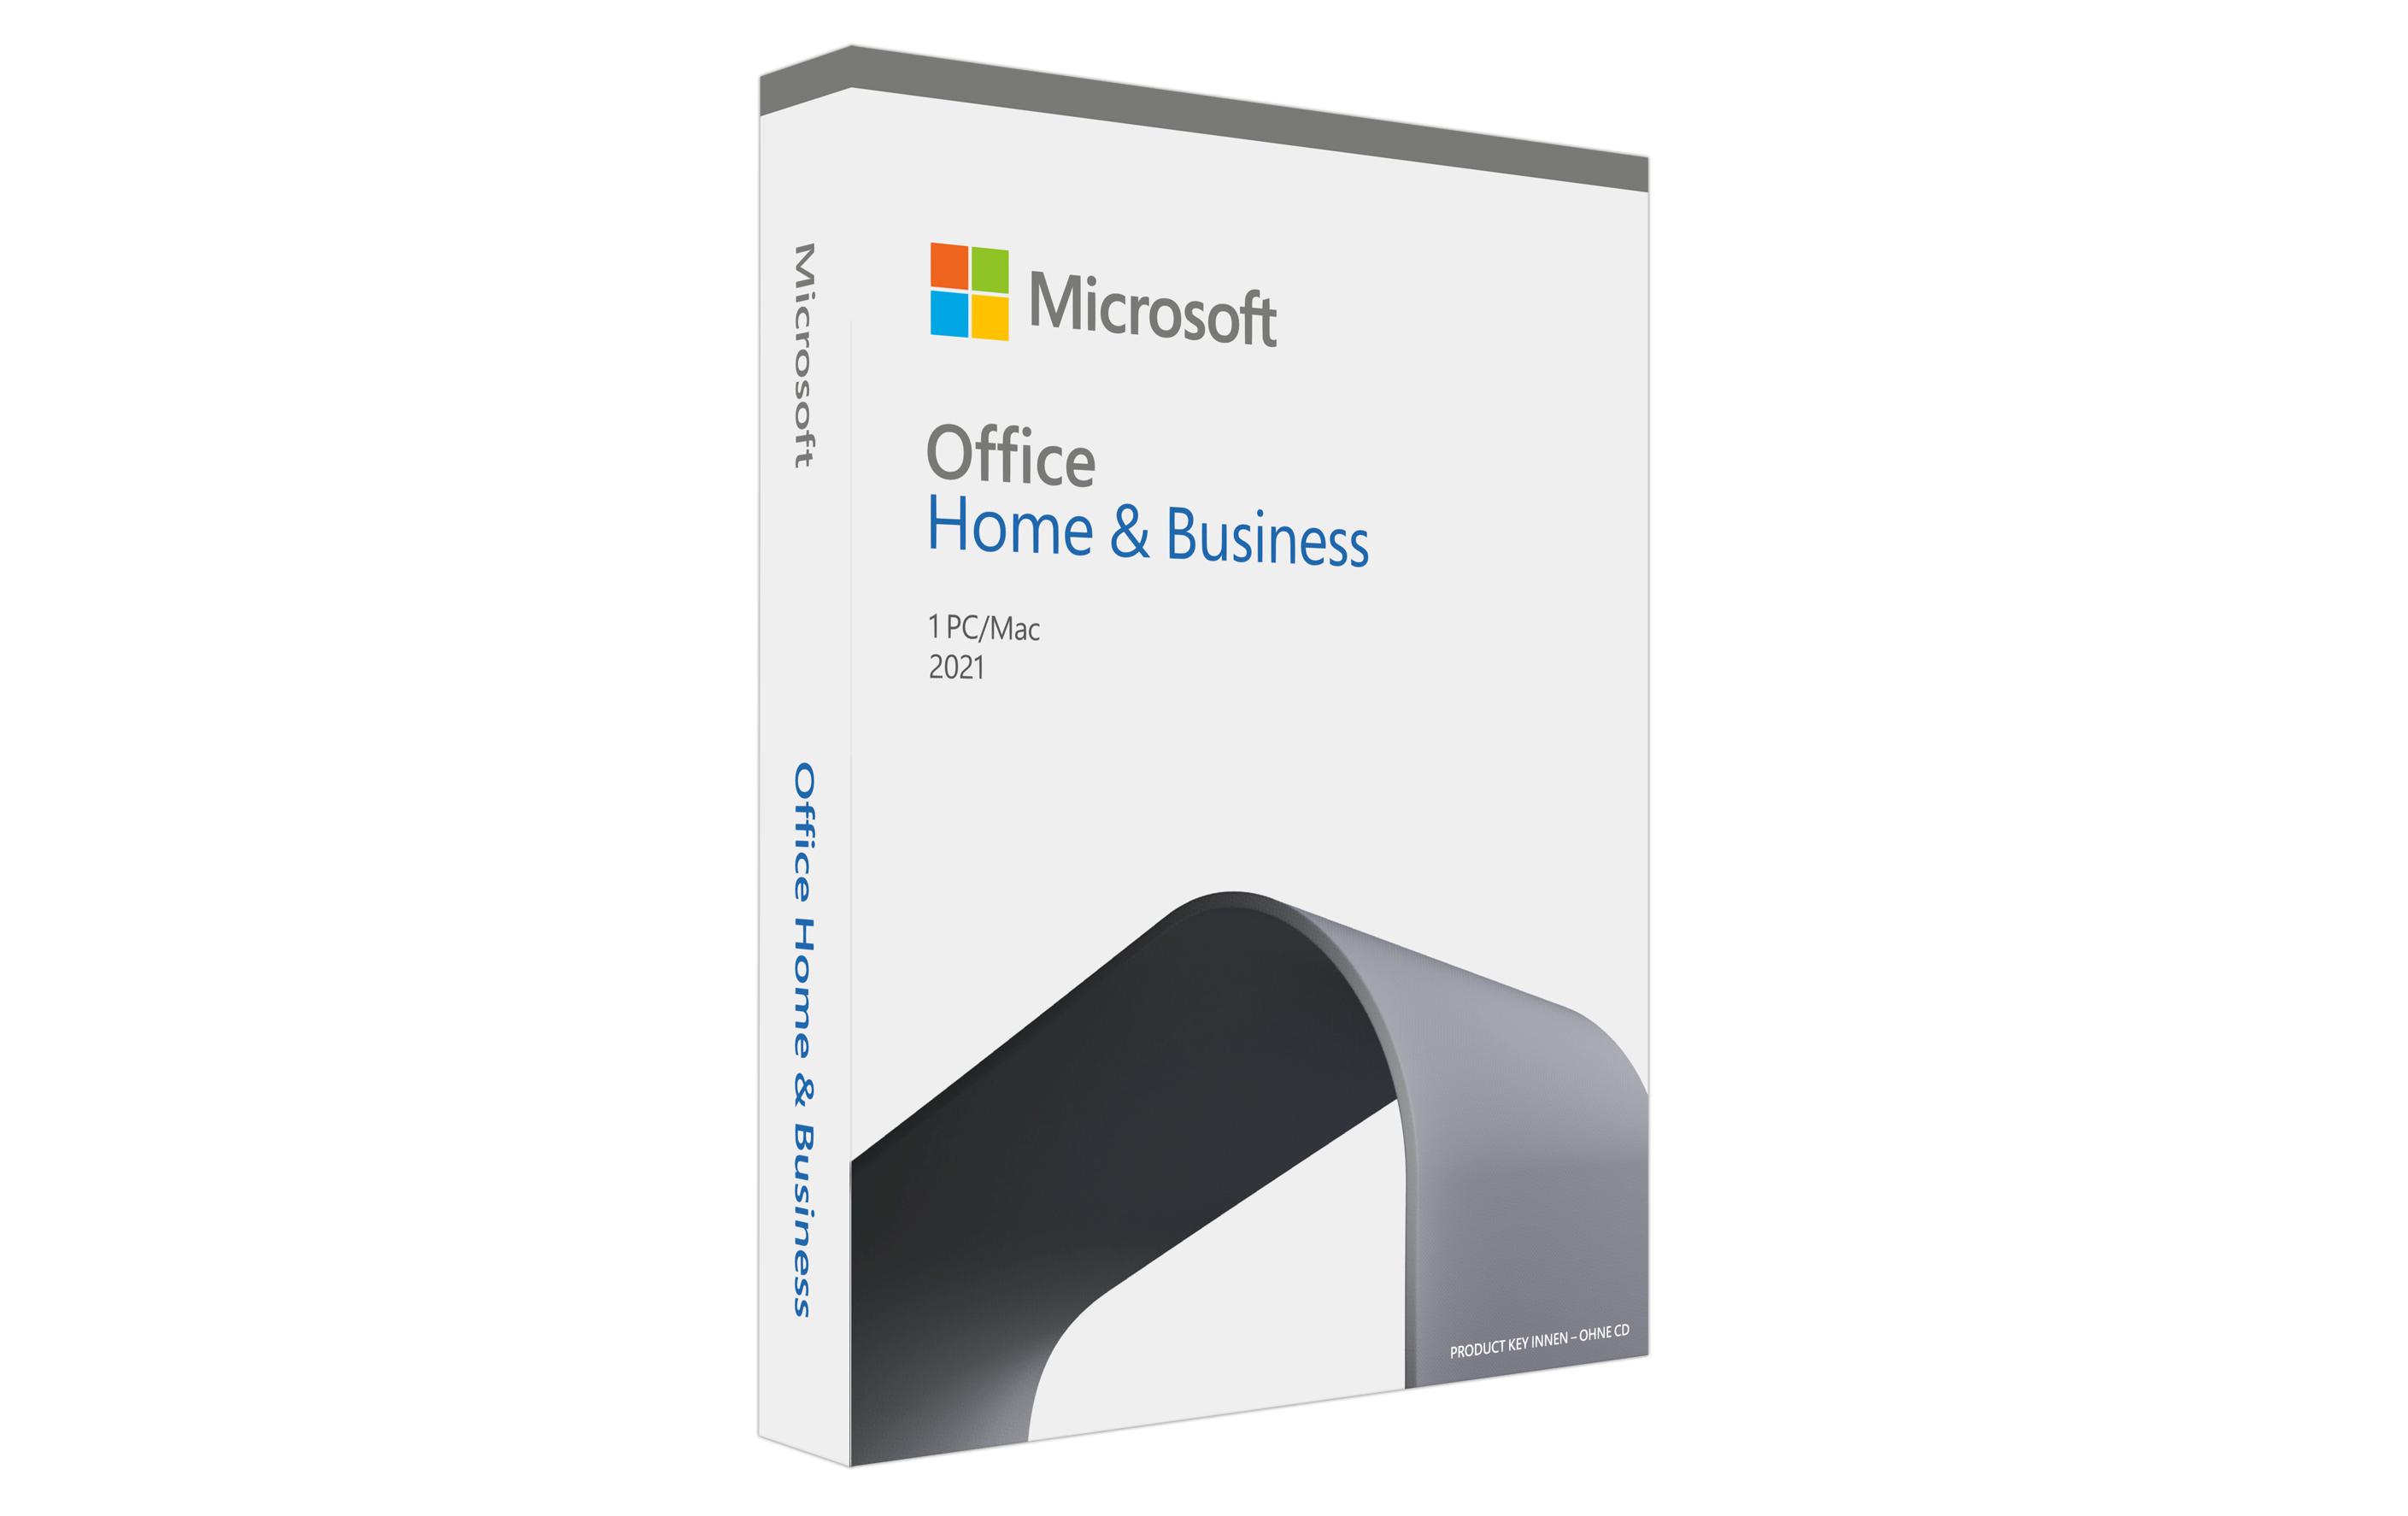 Microsoft Office 2021 Home & Business, Vollversion, deutsch, PKC, 1 PC